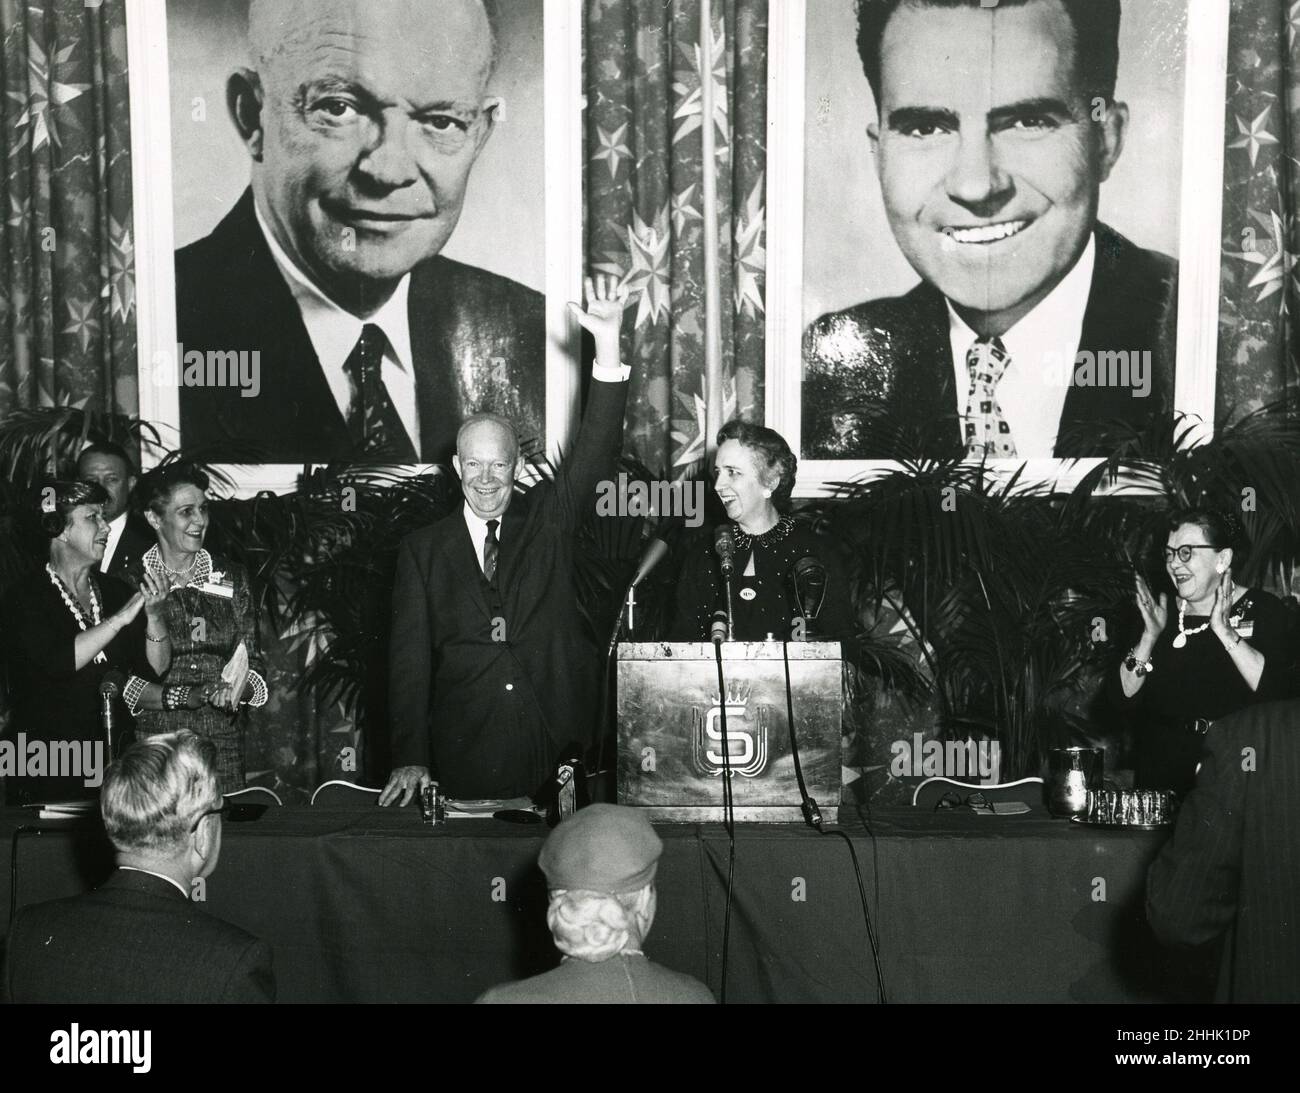 Präsident Eisenhower, der sich für die Wiederwahl einsetzt. 6. März 1956. Foto: Abbie Rowe Stockfoto